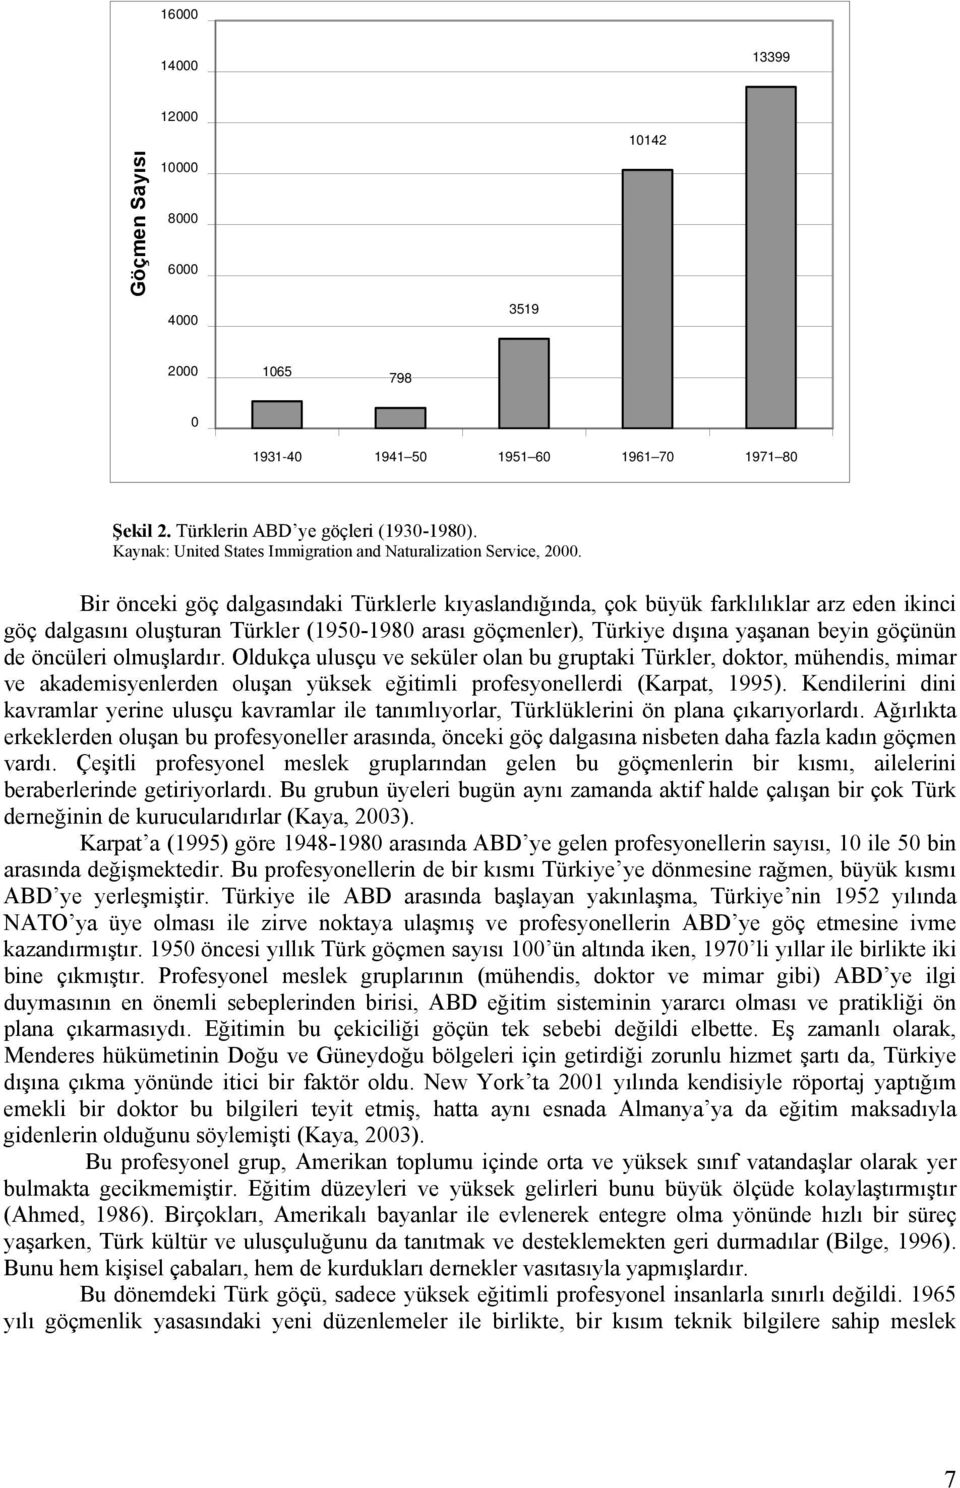 Bir önceki göç dalgasındaki Türklerle kıyaslandığında, çok büyük farklılıklar arz eden ikinci göç dalgasını oluşturan Türkler (1950-1980 arası göçmenler), Türkiye dışına yaşanan beyin göçünün de